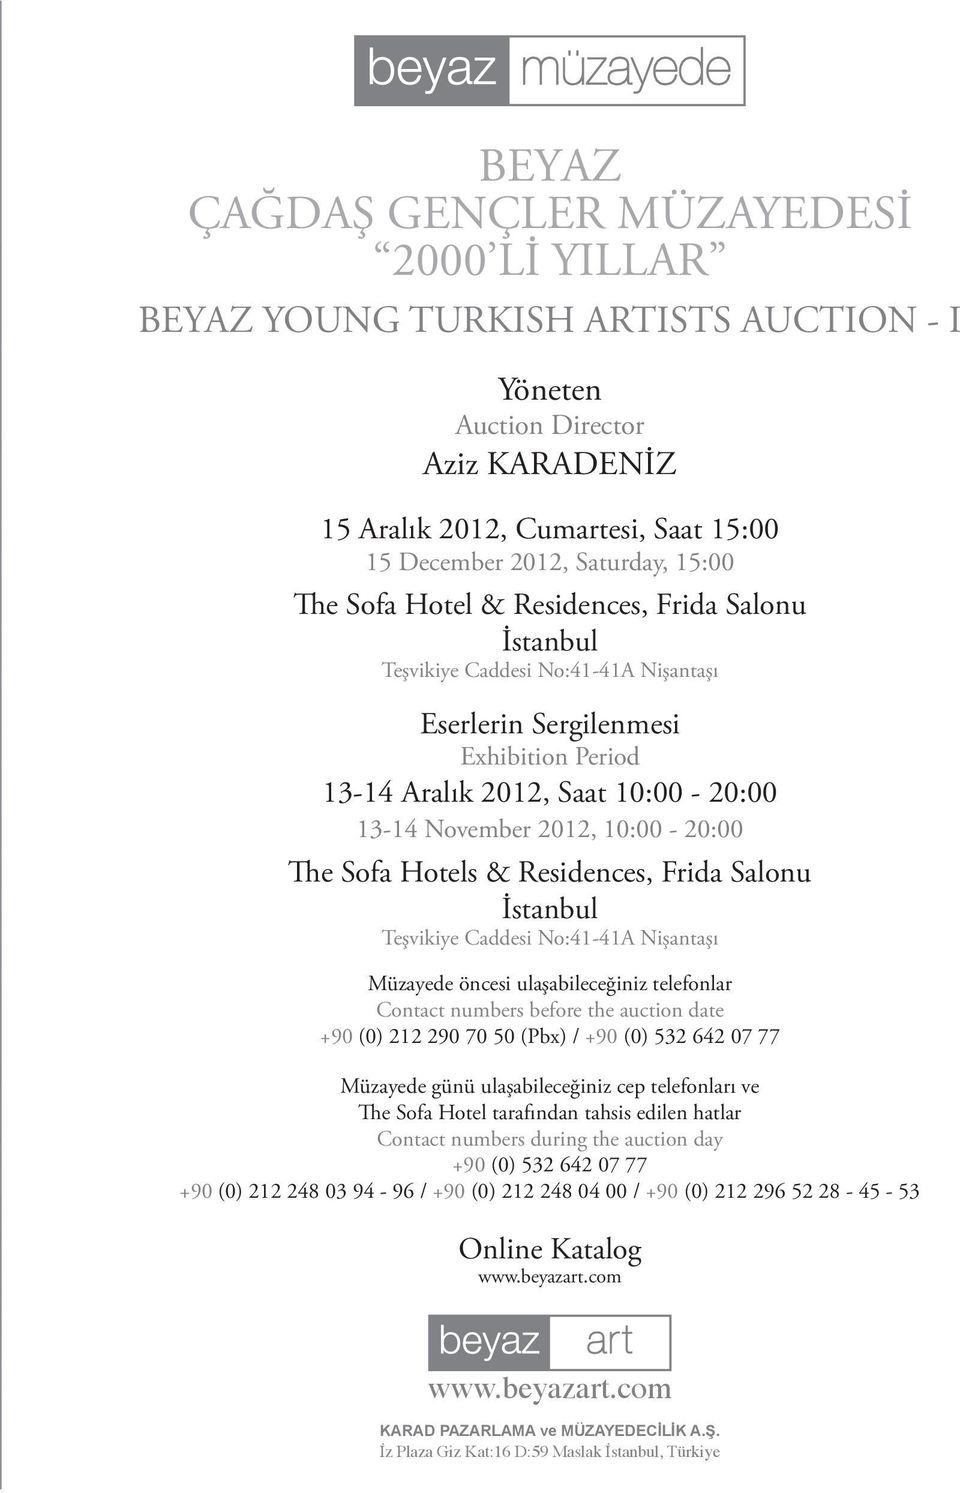 The Sofa Hotels & Residences, Frida Salonu İstanbul Teşvikiye Caddesi No:41-41A Nişantaşı Müzayede öncesi ulaşabileceğiniz telefonlar Contact numbers before the auction date +90 (0) 212 290 70 50